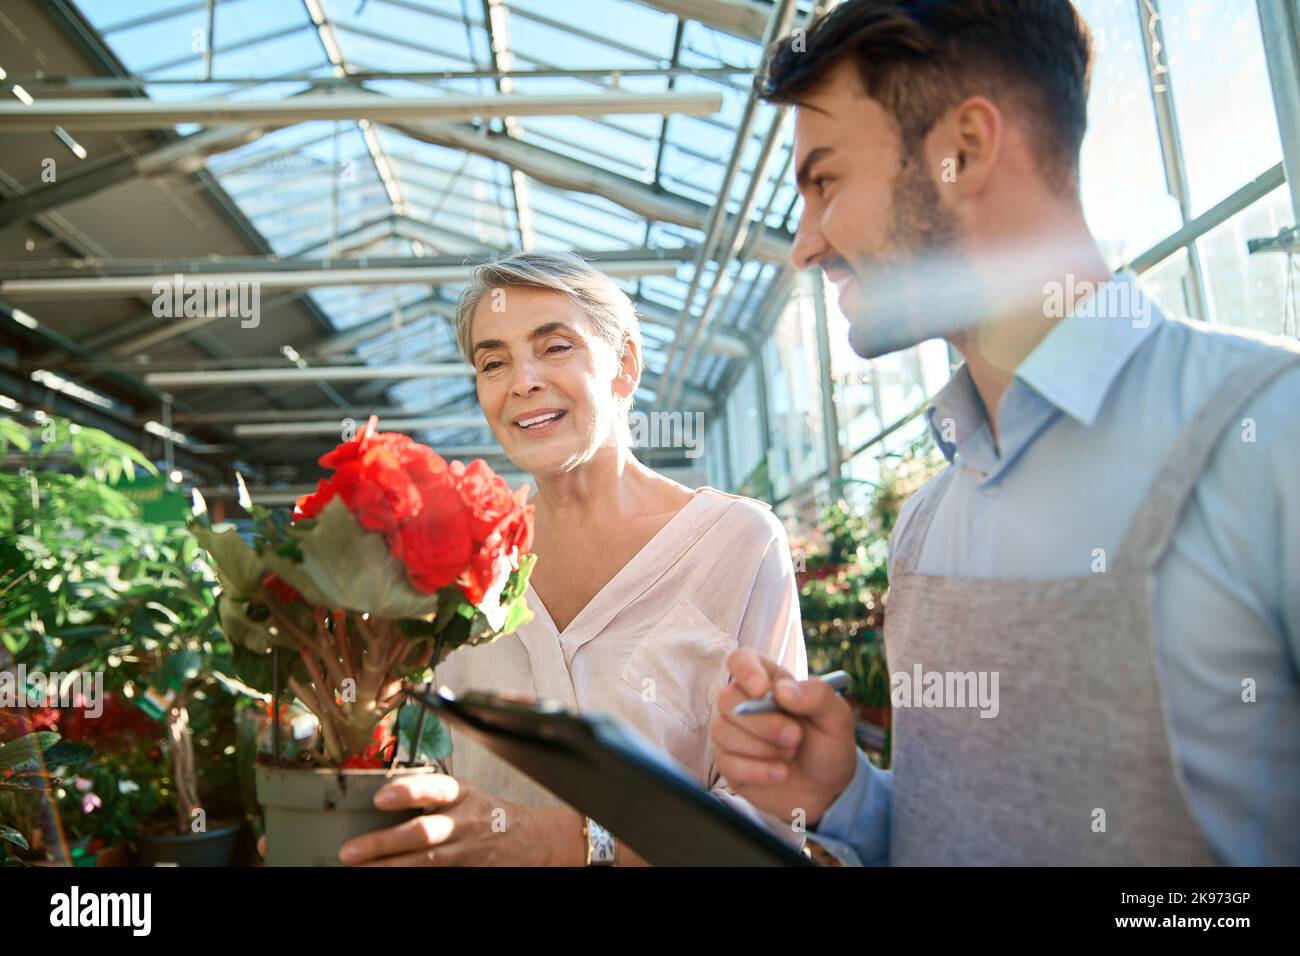 verkäuferin ist Floristin und ein glücklicher Käufer mit einer Pflanze in den Händen. Stockfoto